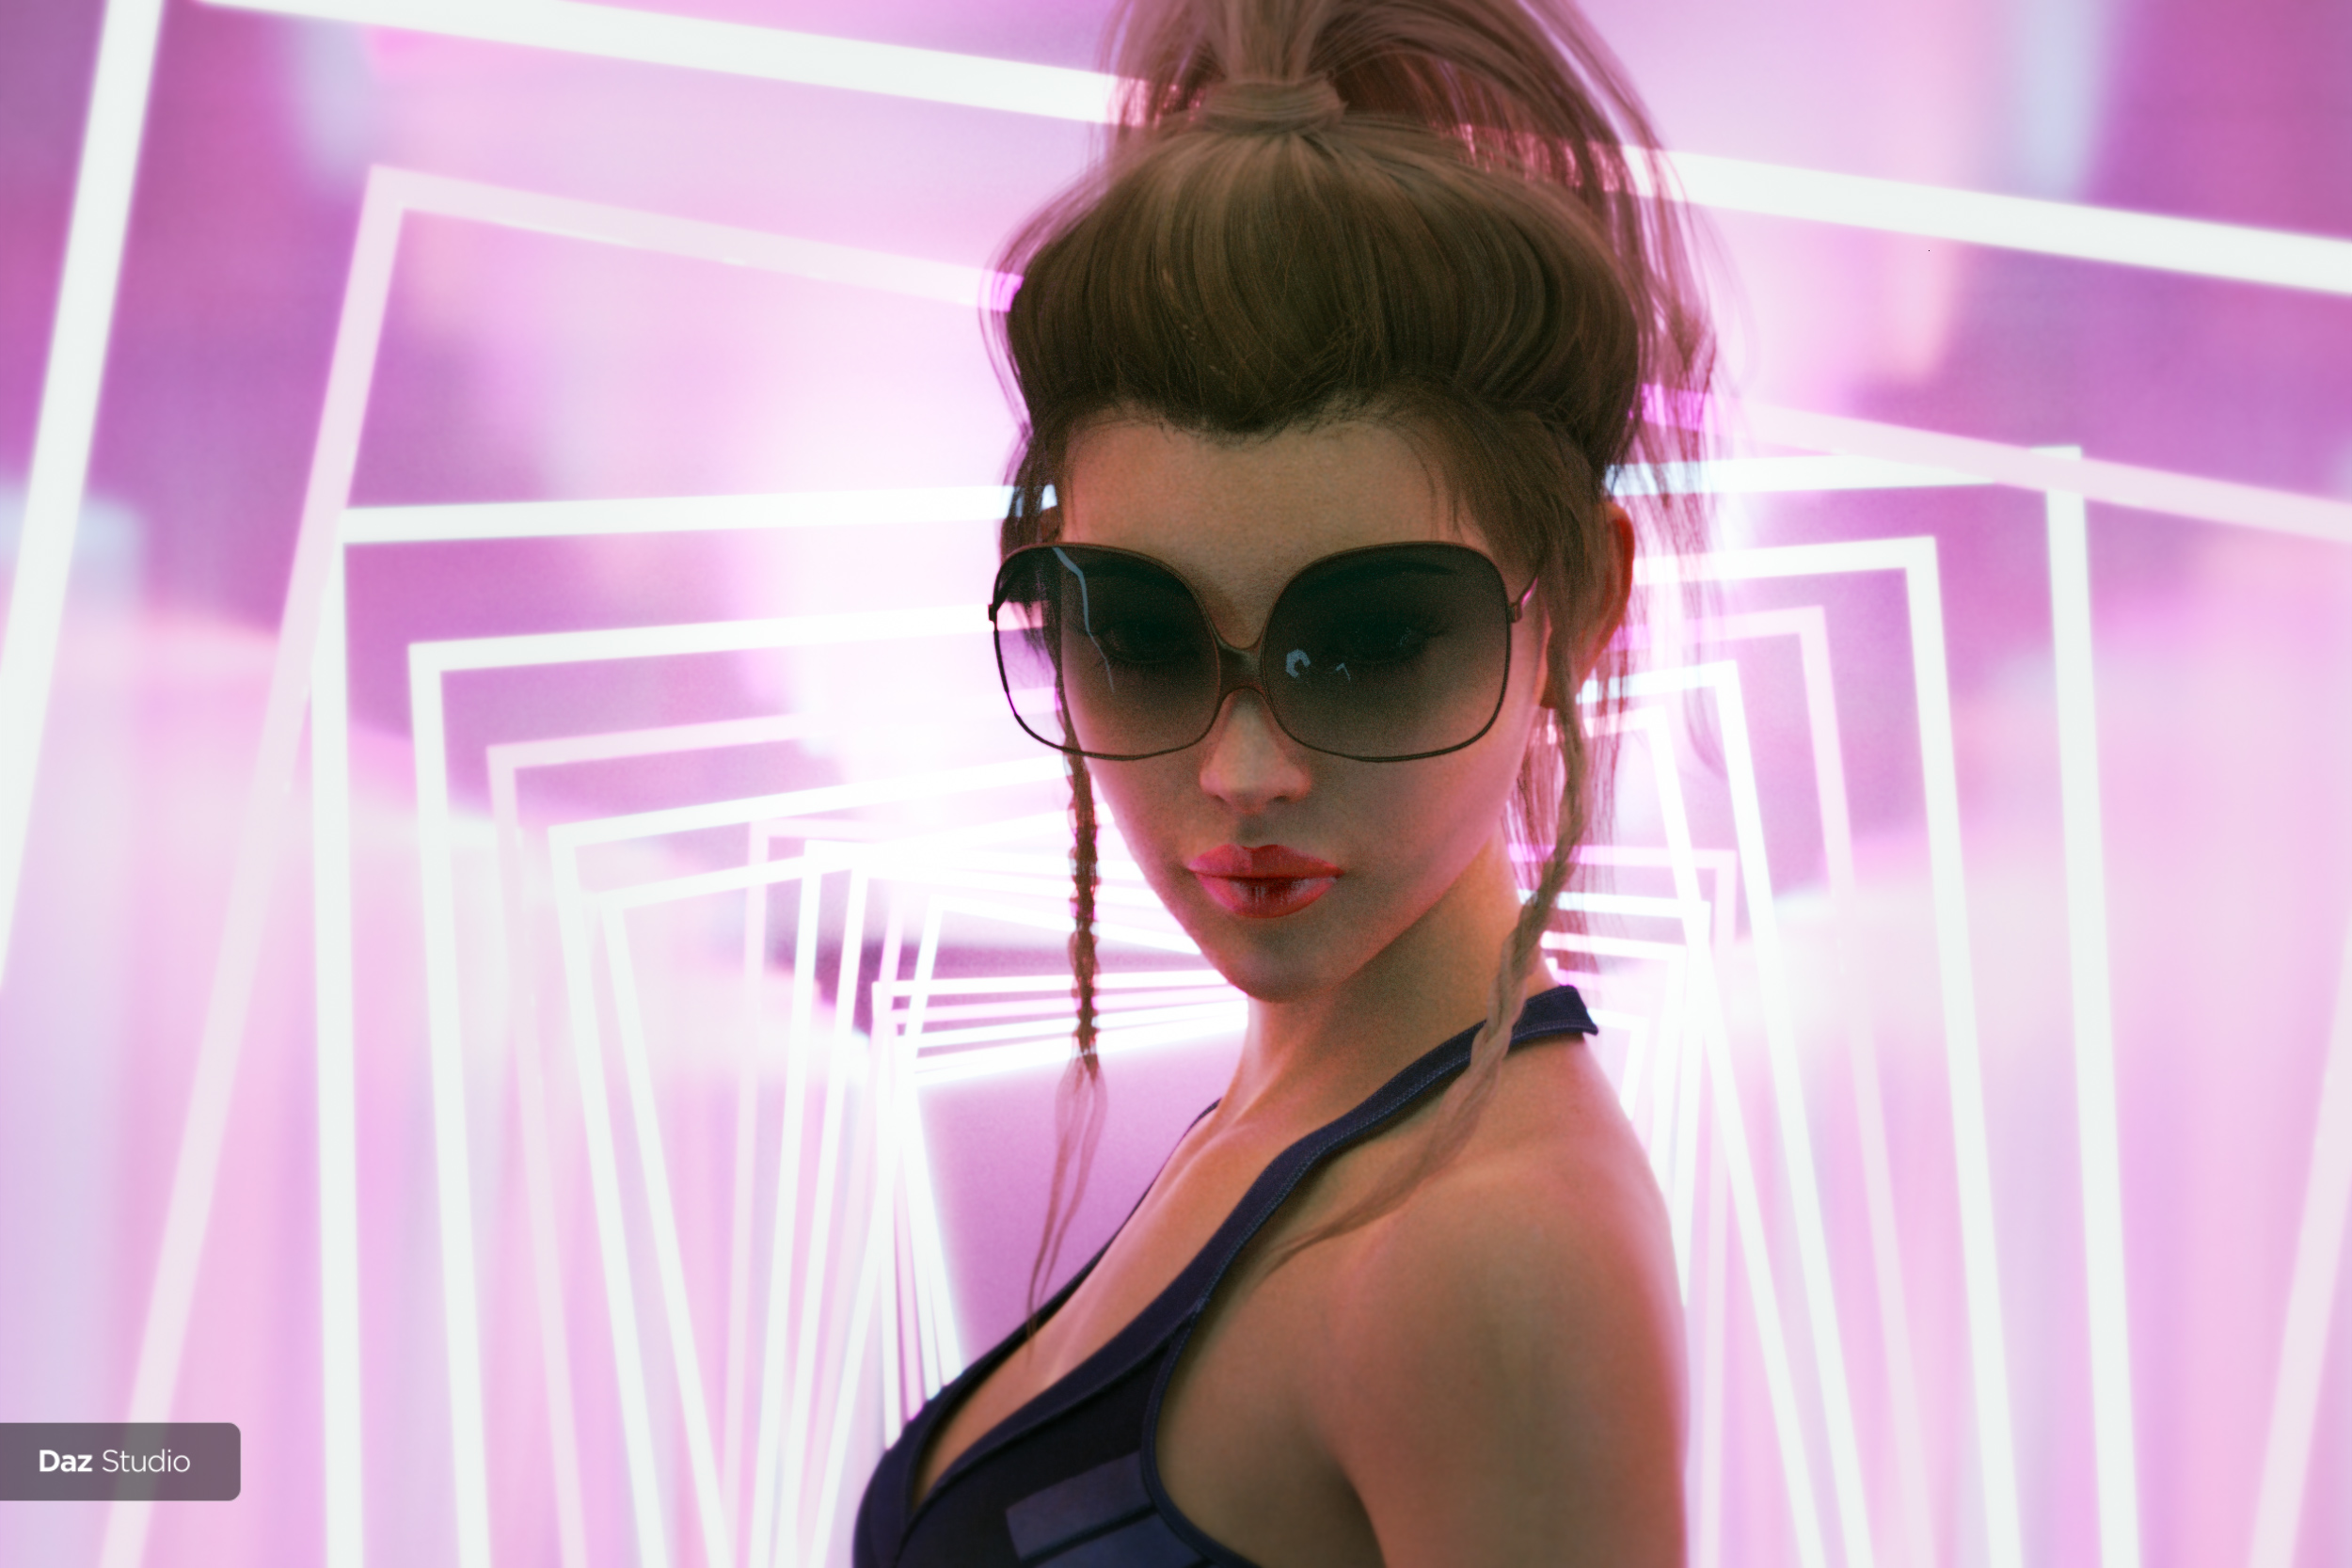 Neon Light Corridor by: Neikdian, 3D Models by Daz 3D